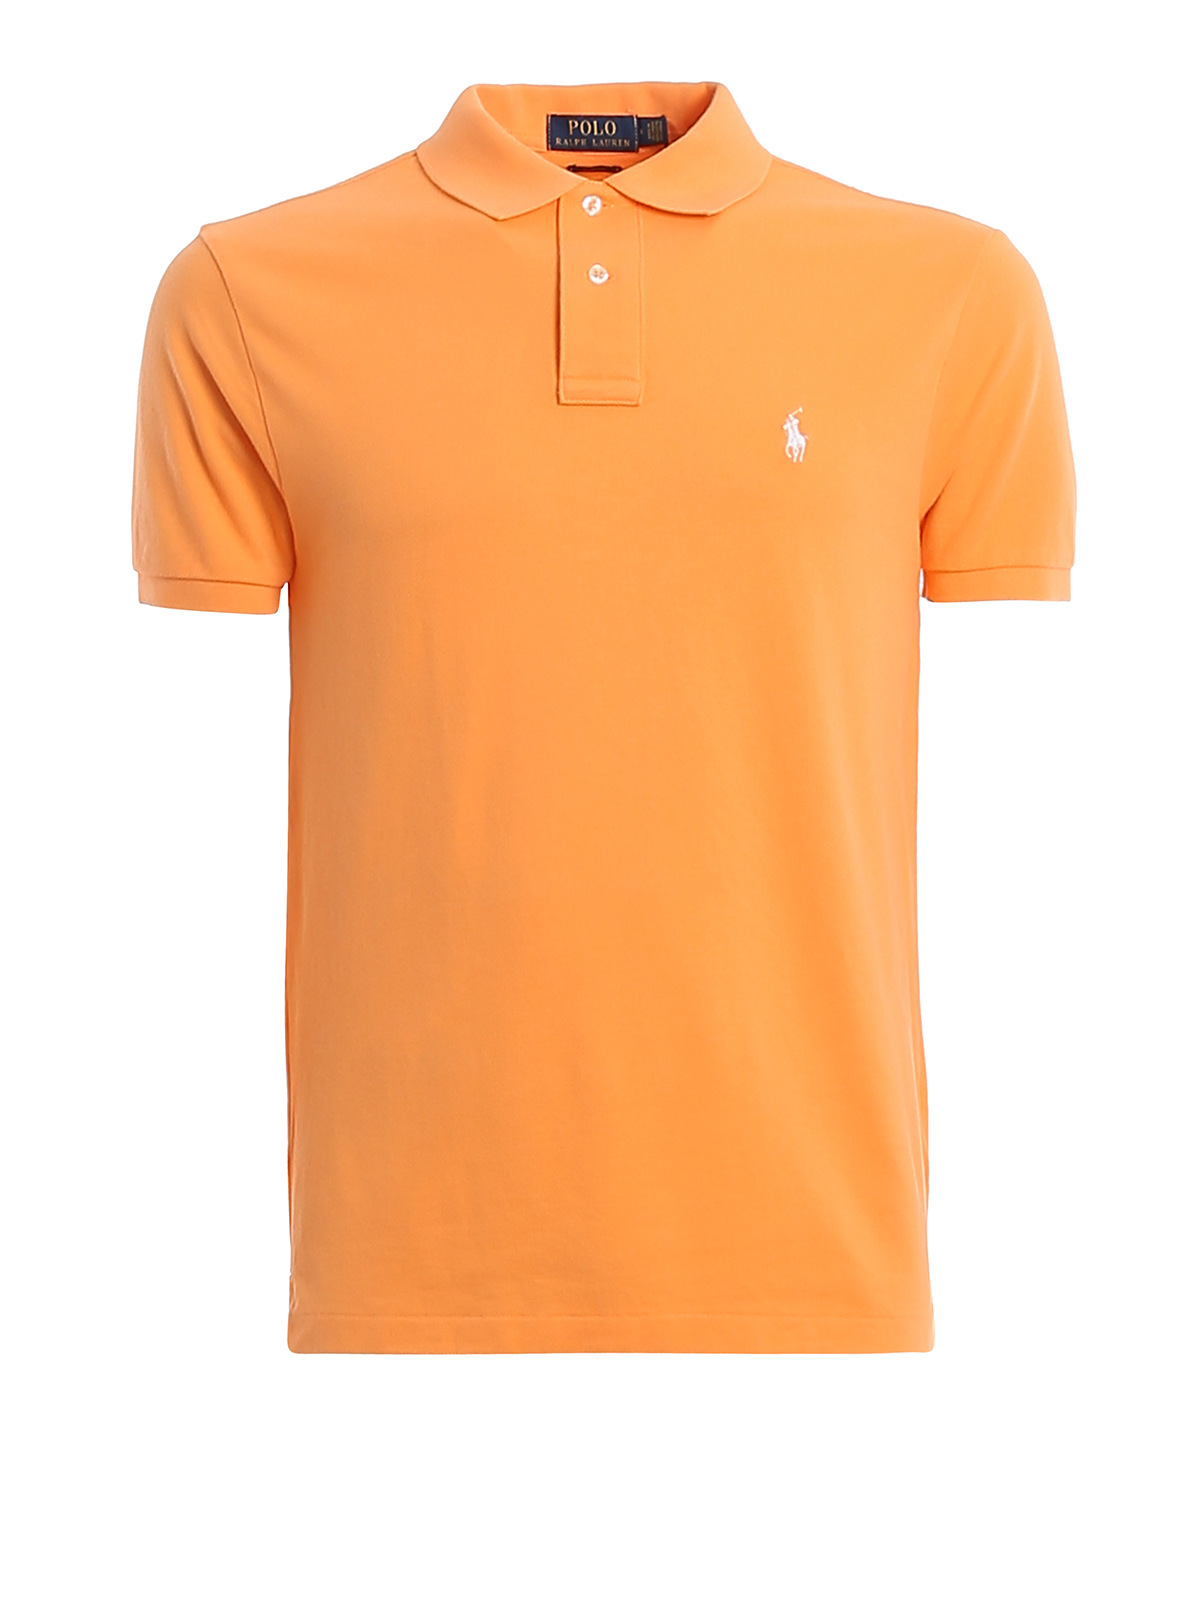 Polo shirts Polo Ralph Lauren - Orange pique cotton polo shirt -  710795080027